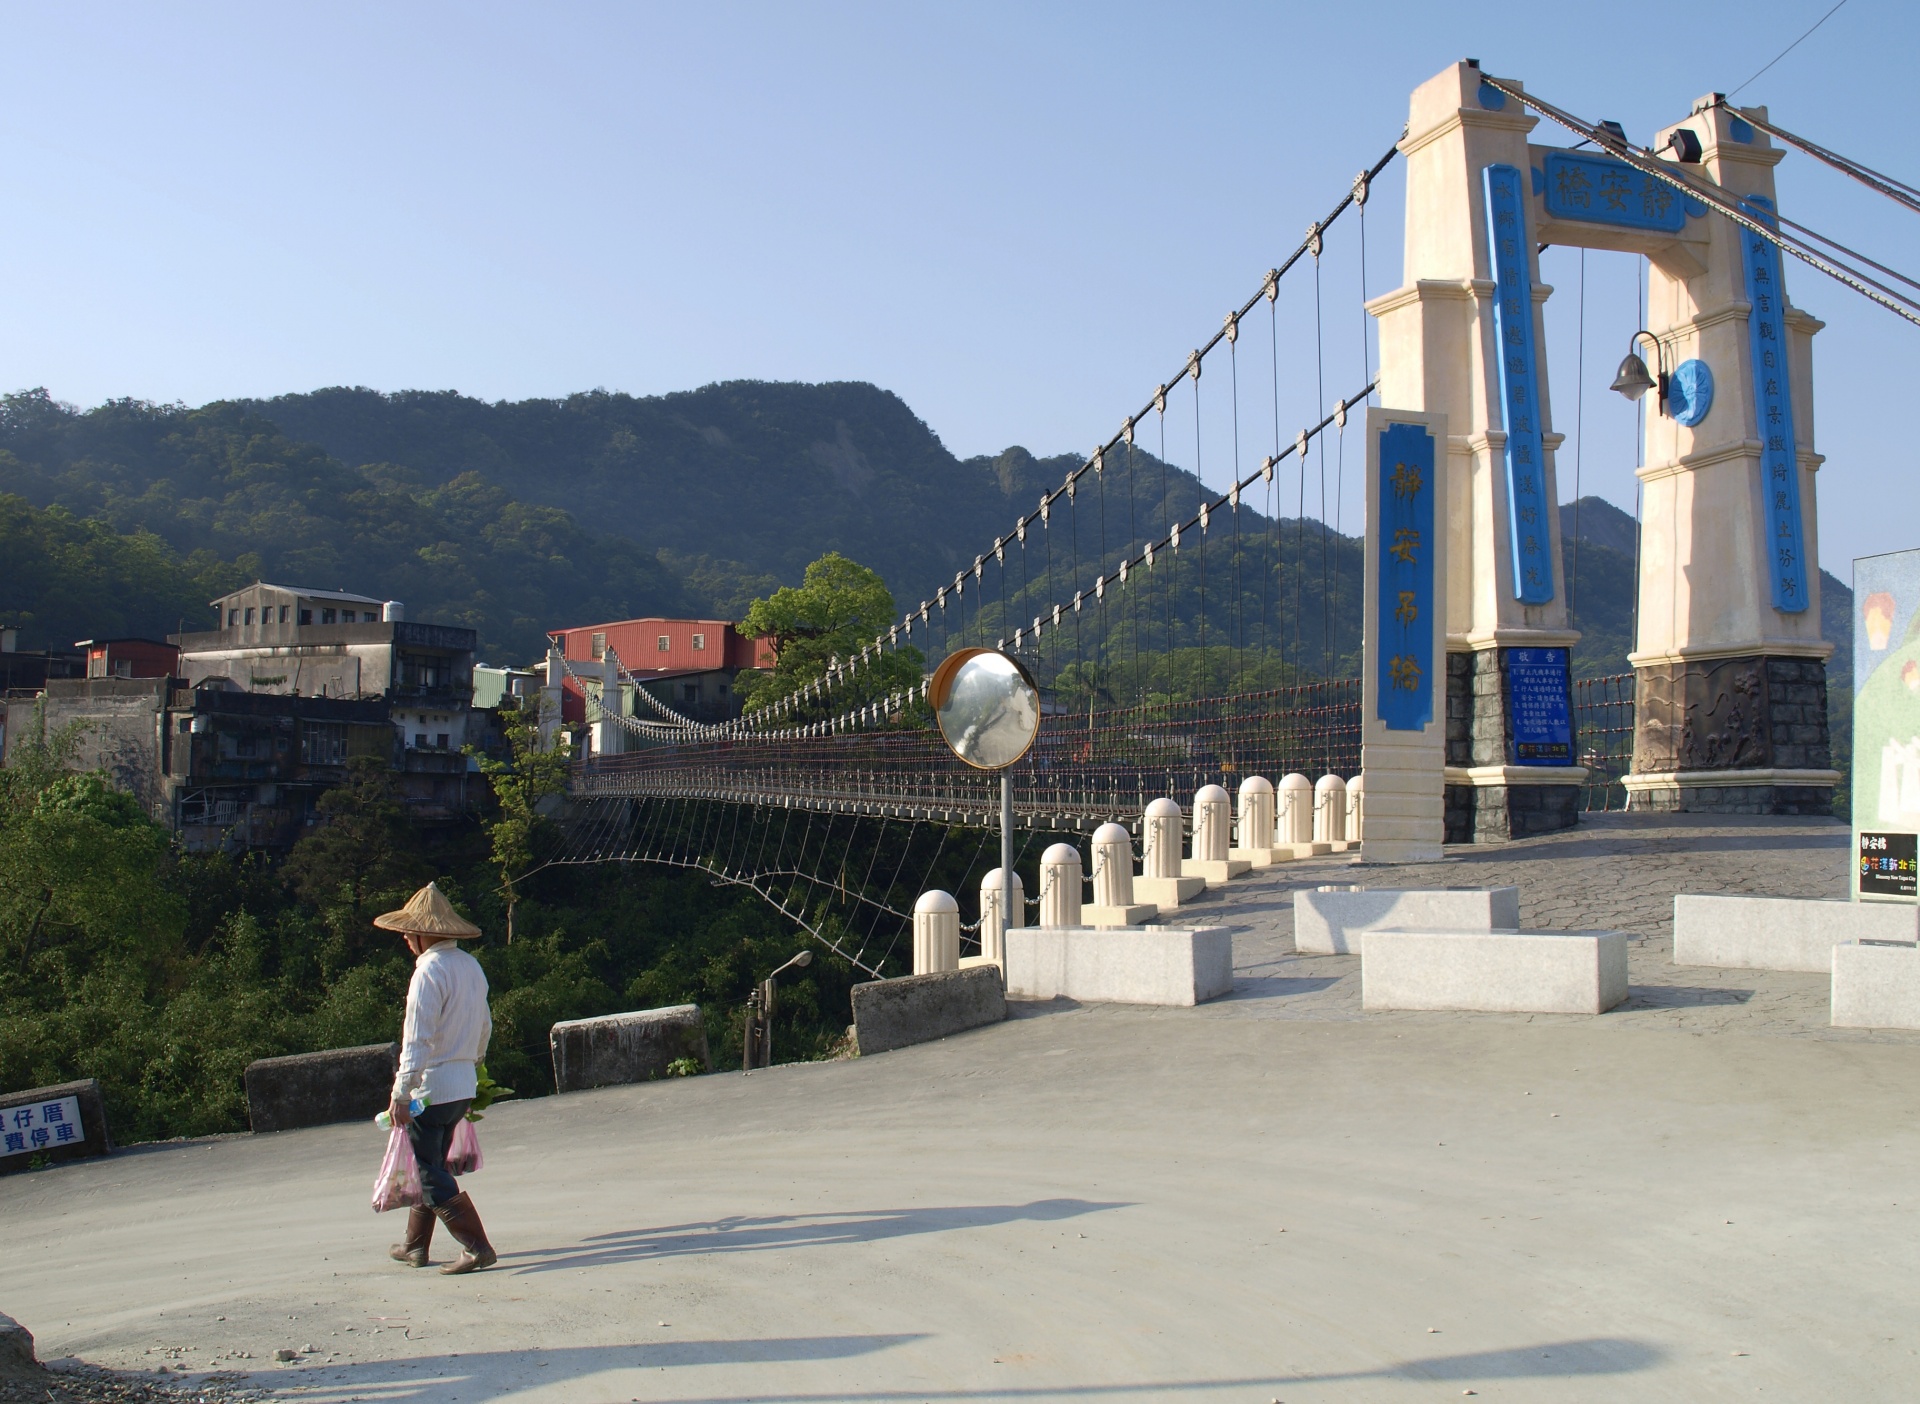 Pingxi Висячий мост